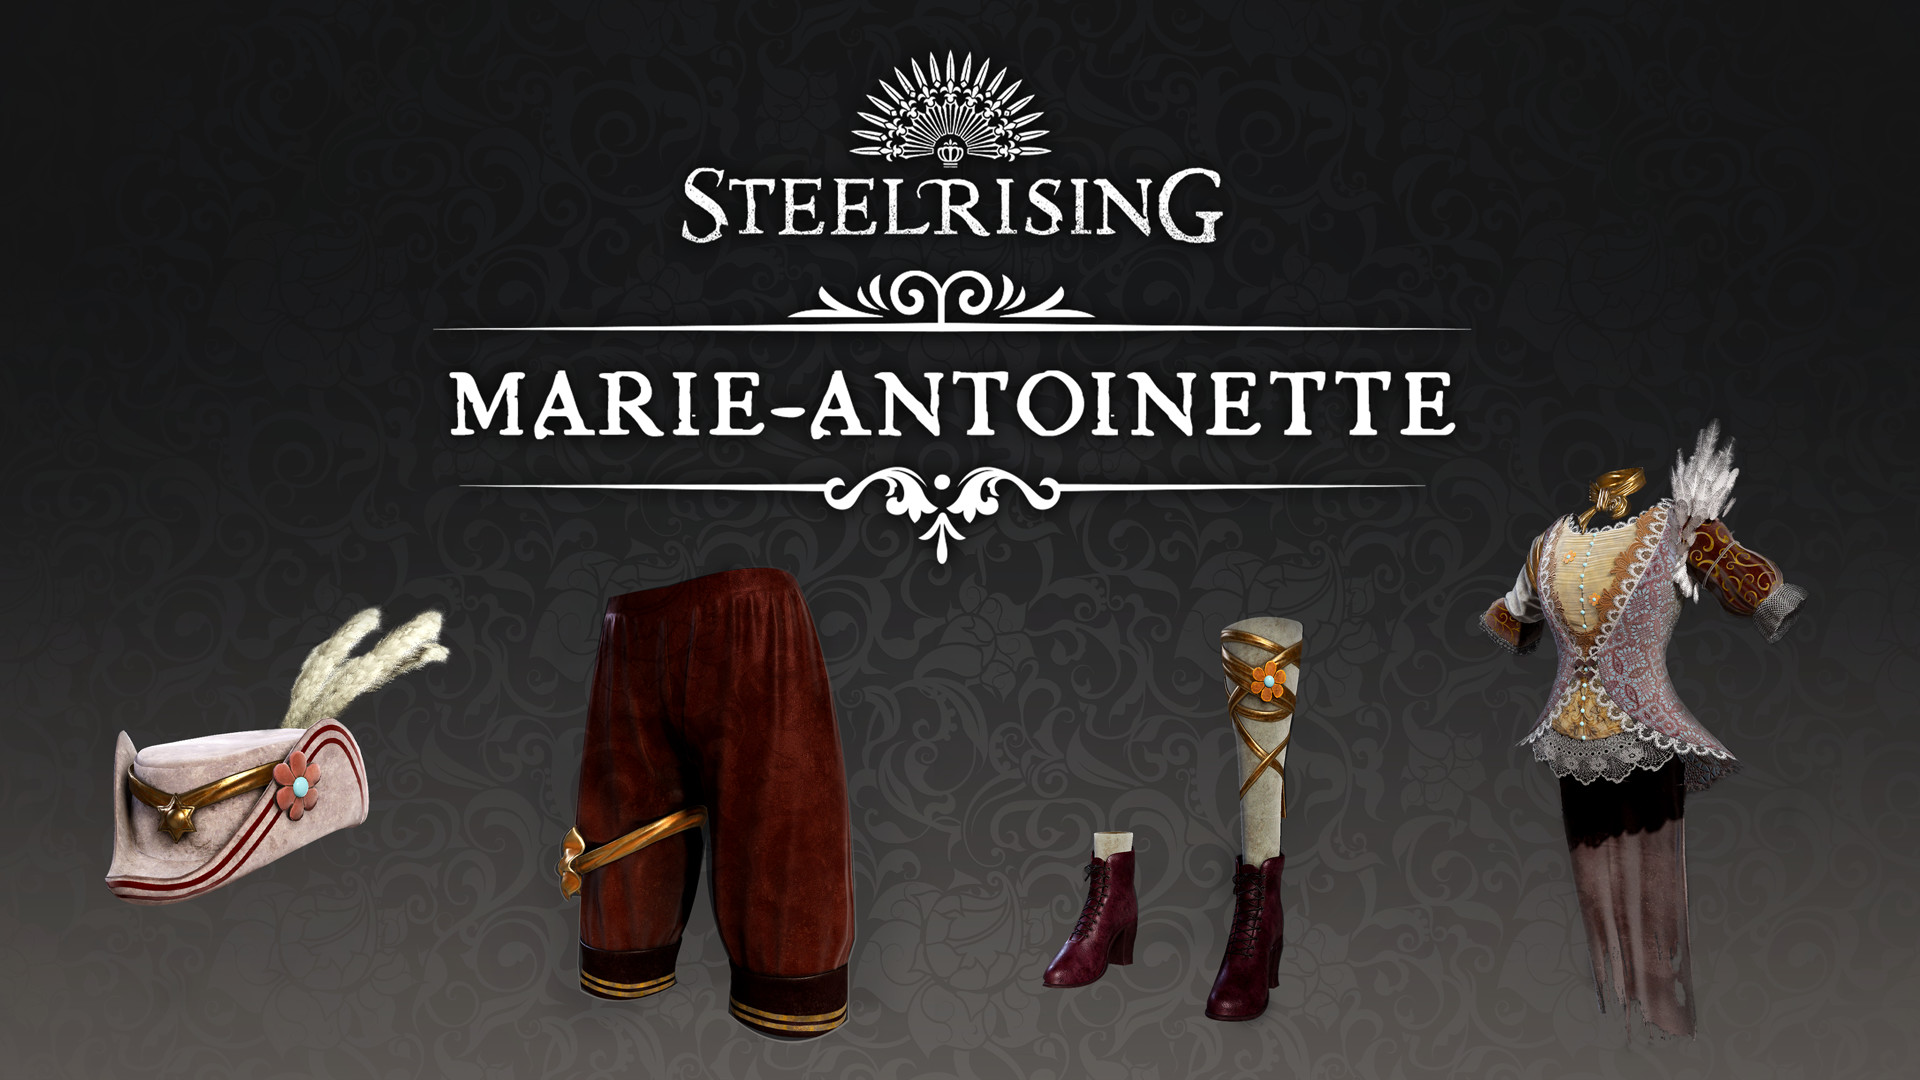 Steelrising - Marie-Antoinette Cosmetic Pack DLC Steam CD Key 1.01$